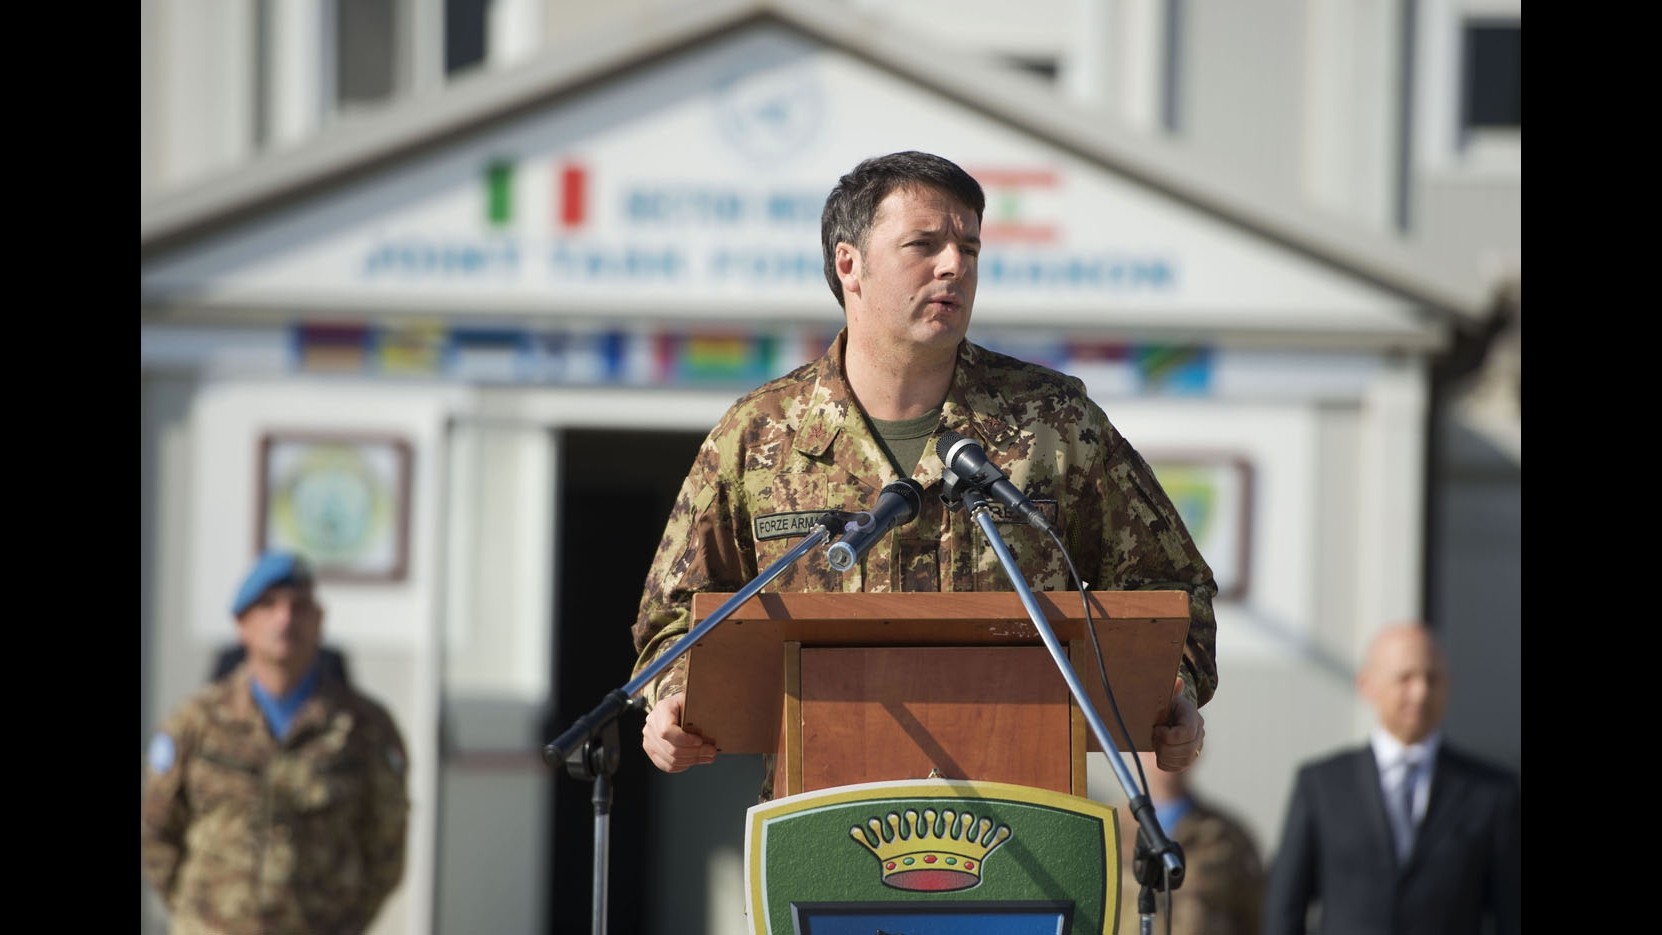 Beirut, Renzi: Auguri a nostri militari. Libano piccolo ma accoglie 10 volte più di Italia